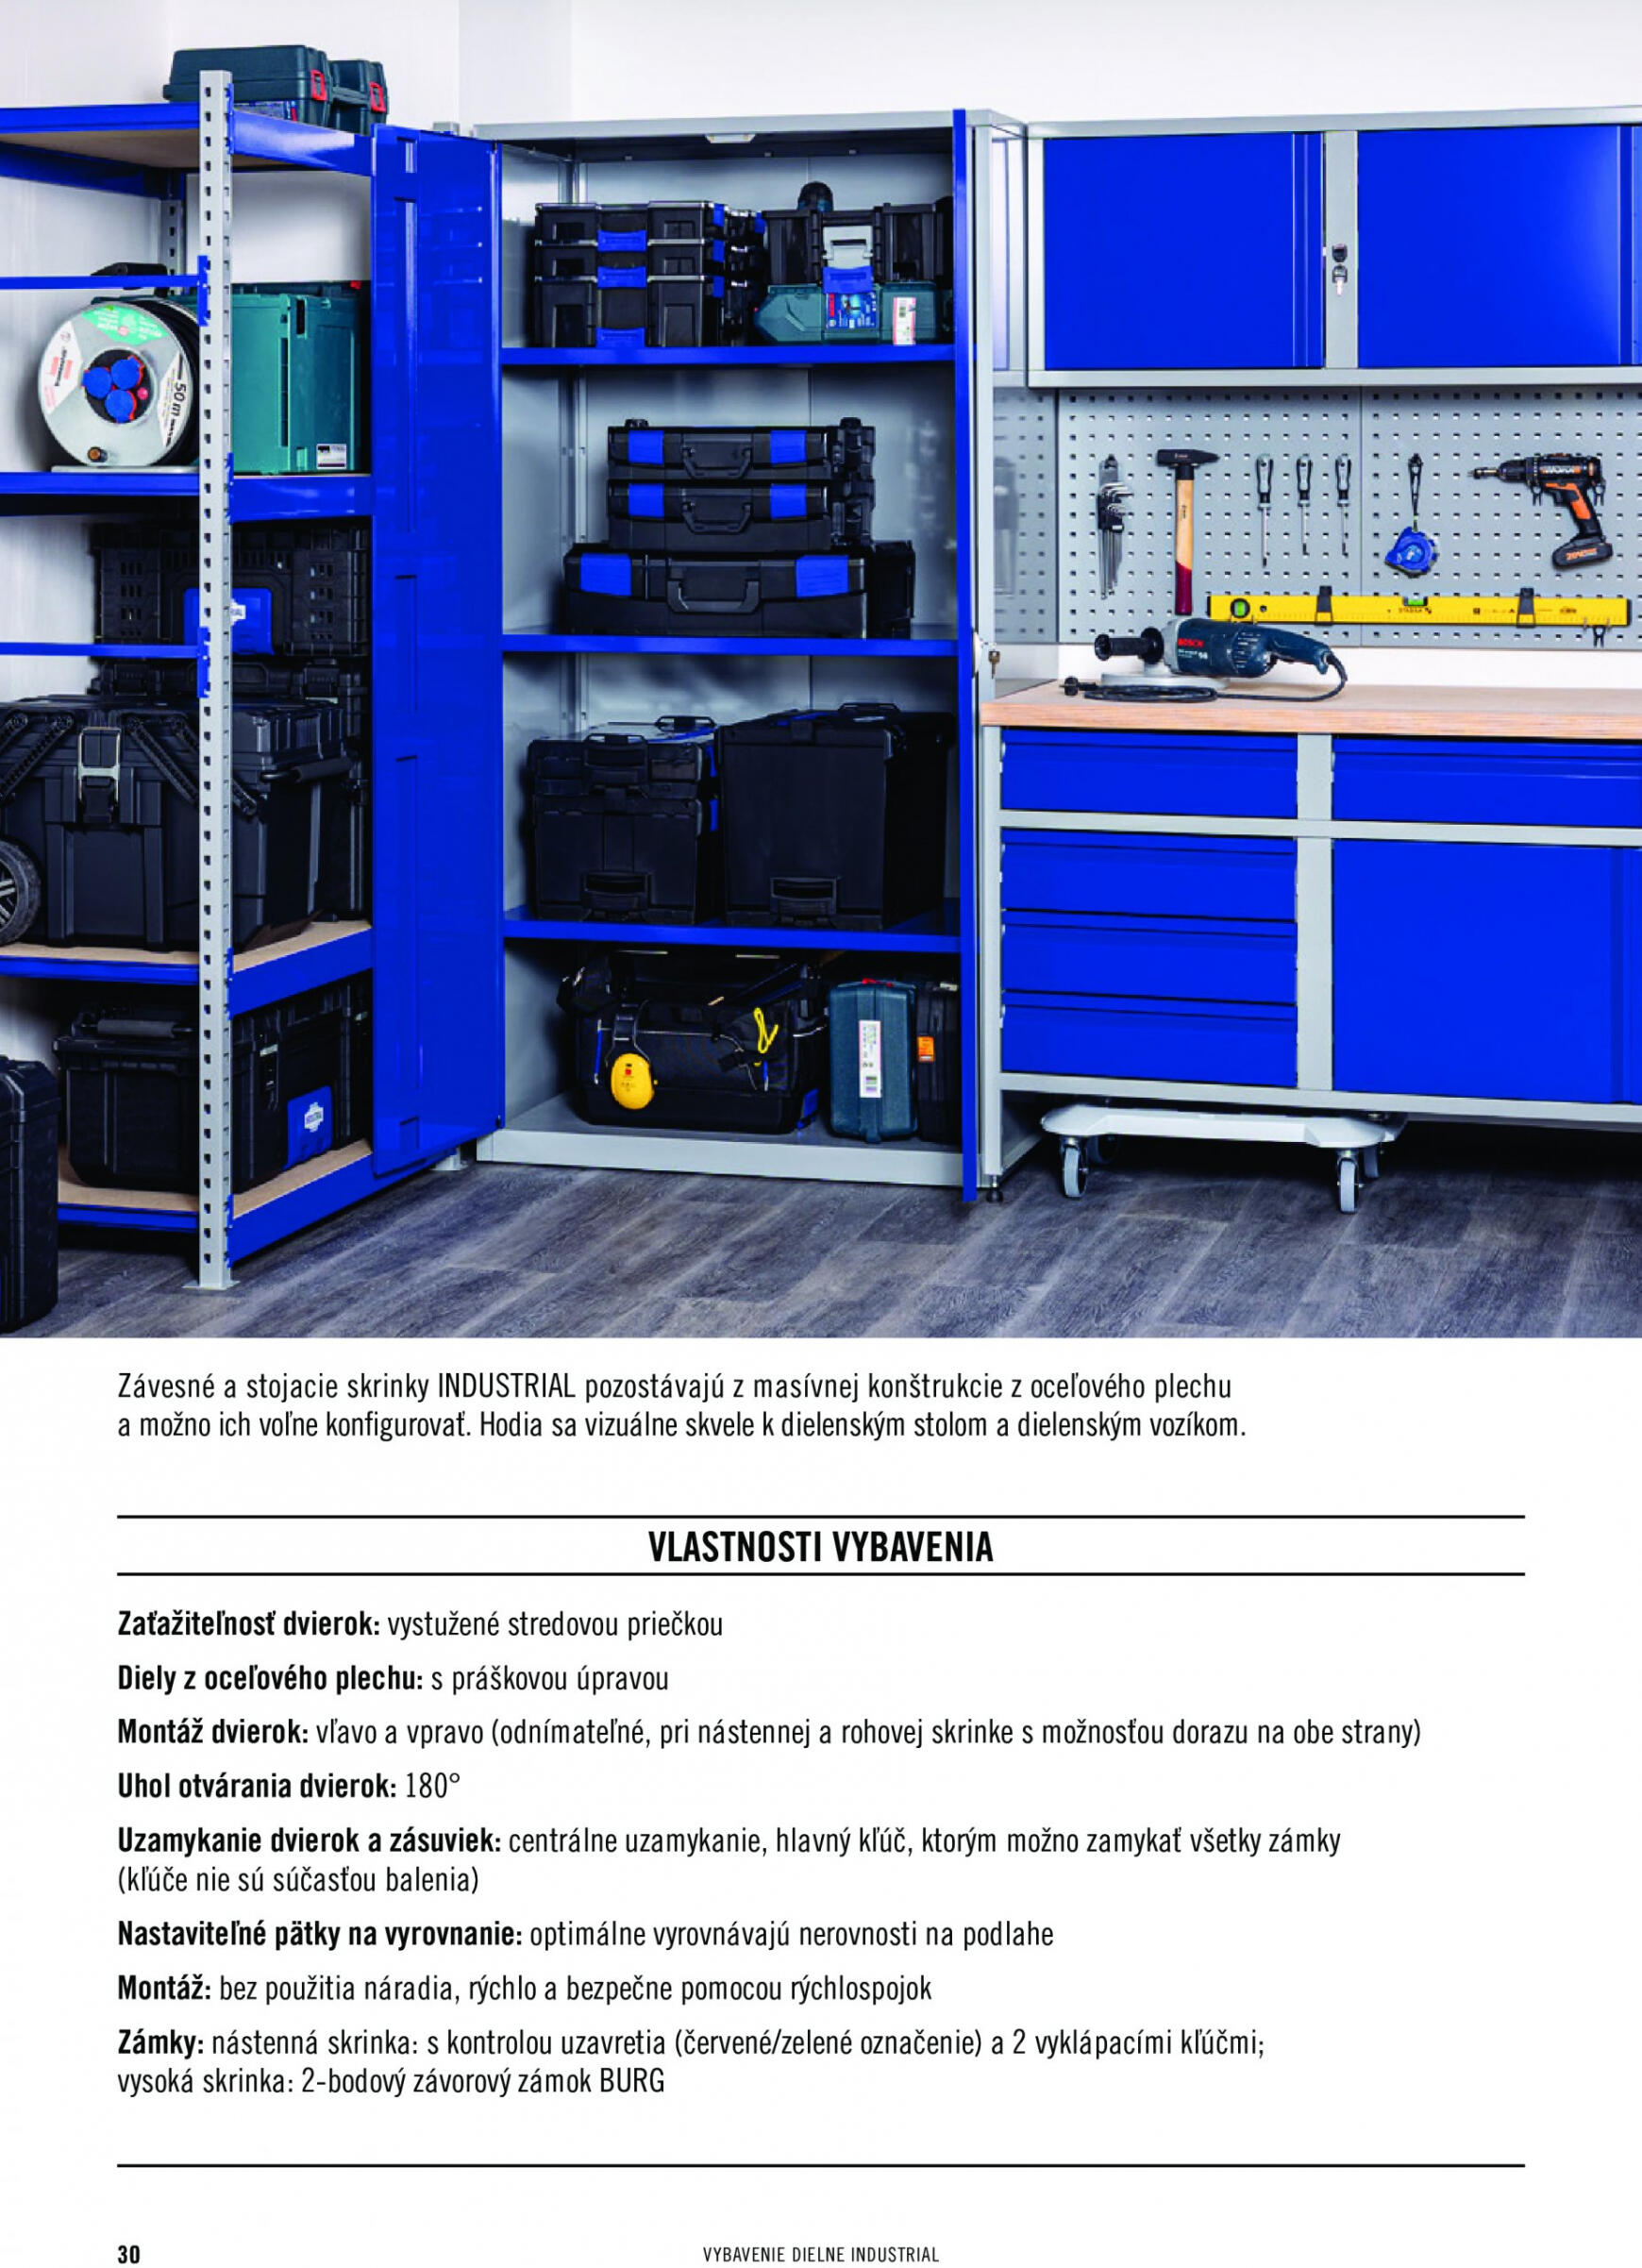 hornbach - Hornbach - INDUSTRIAL - Systém vybavenia dielne - page: 30